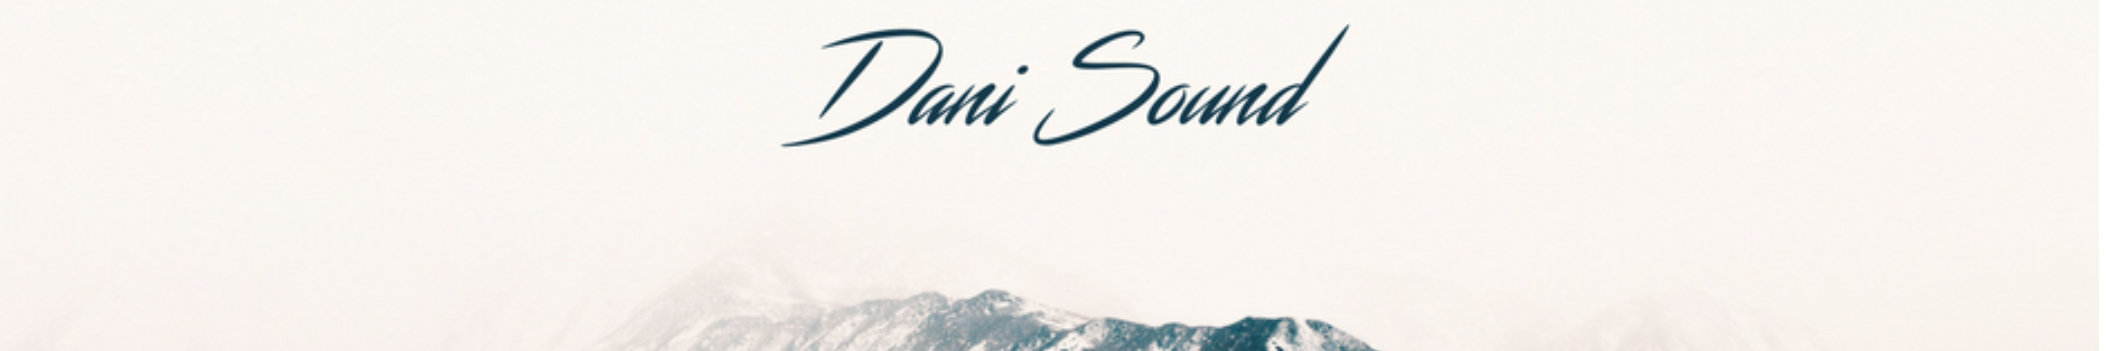 Dani Sound